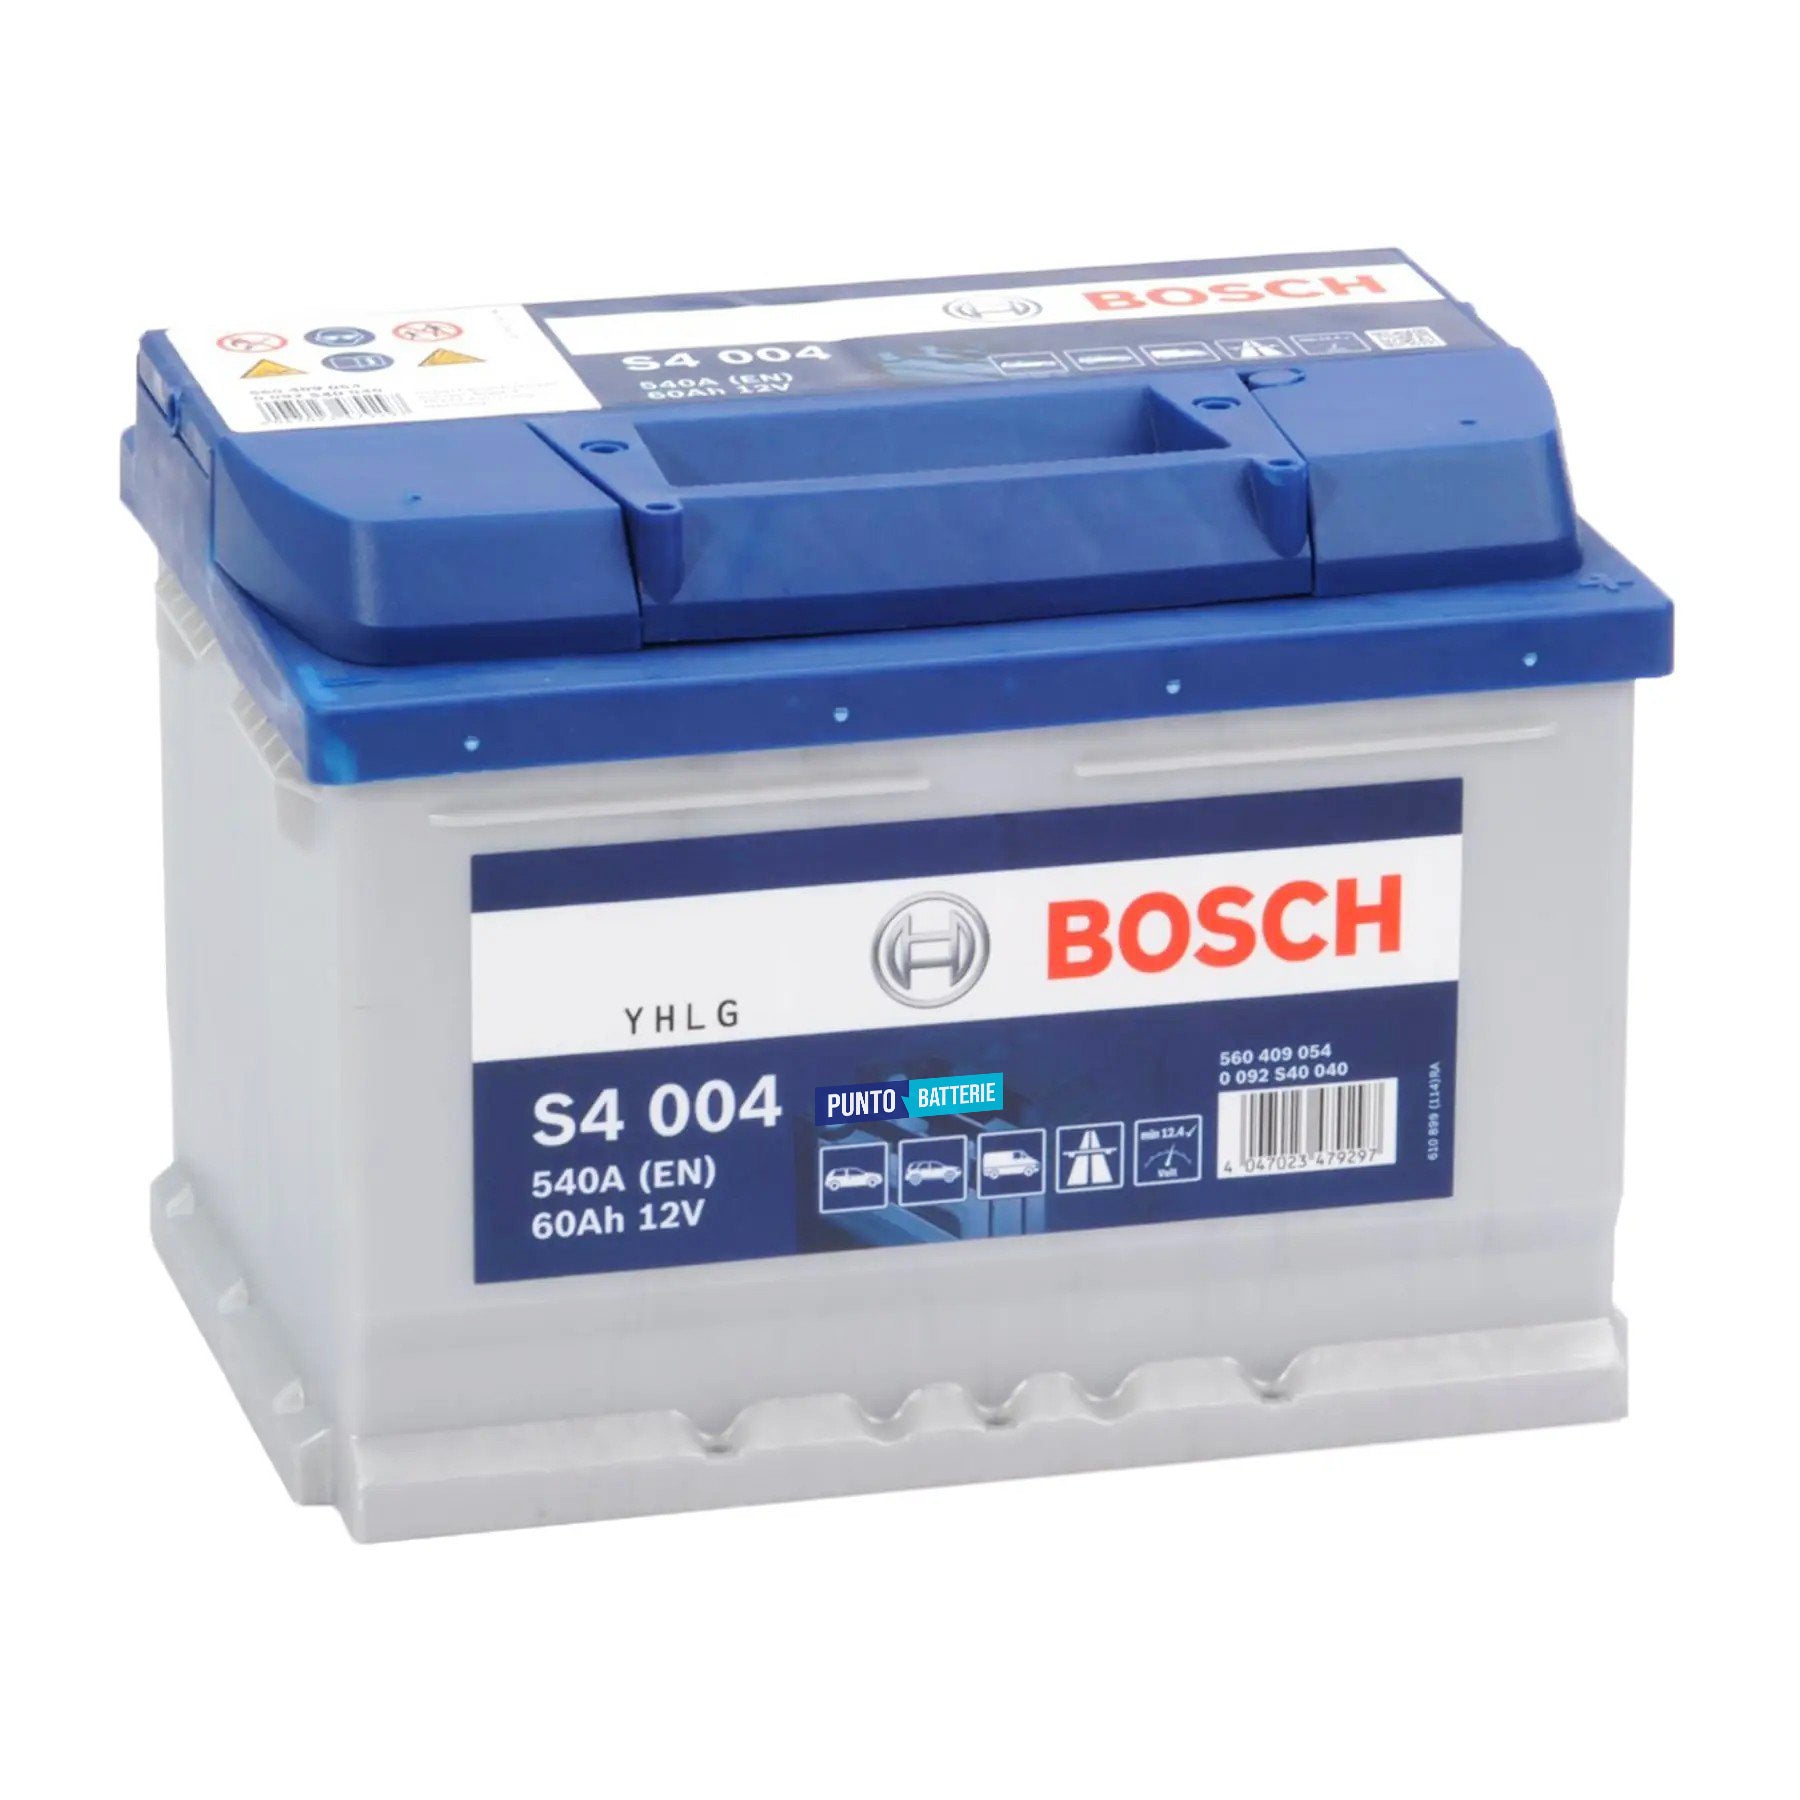 Batteria originale Bosch S4 S4 004, dimensioni 242 x 175 x 175, polo positivo a destra, 12 volt, 60 amperora, 540 ampere. Batteria per auto e veicoli leggeri.